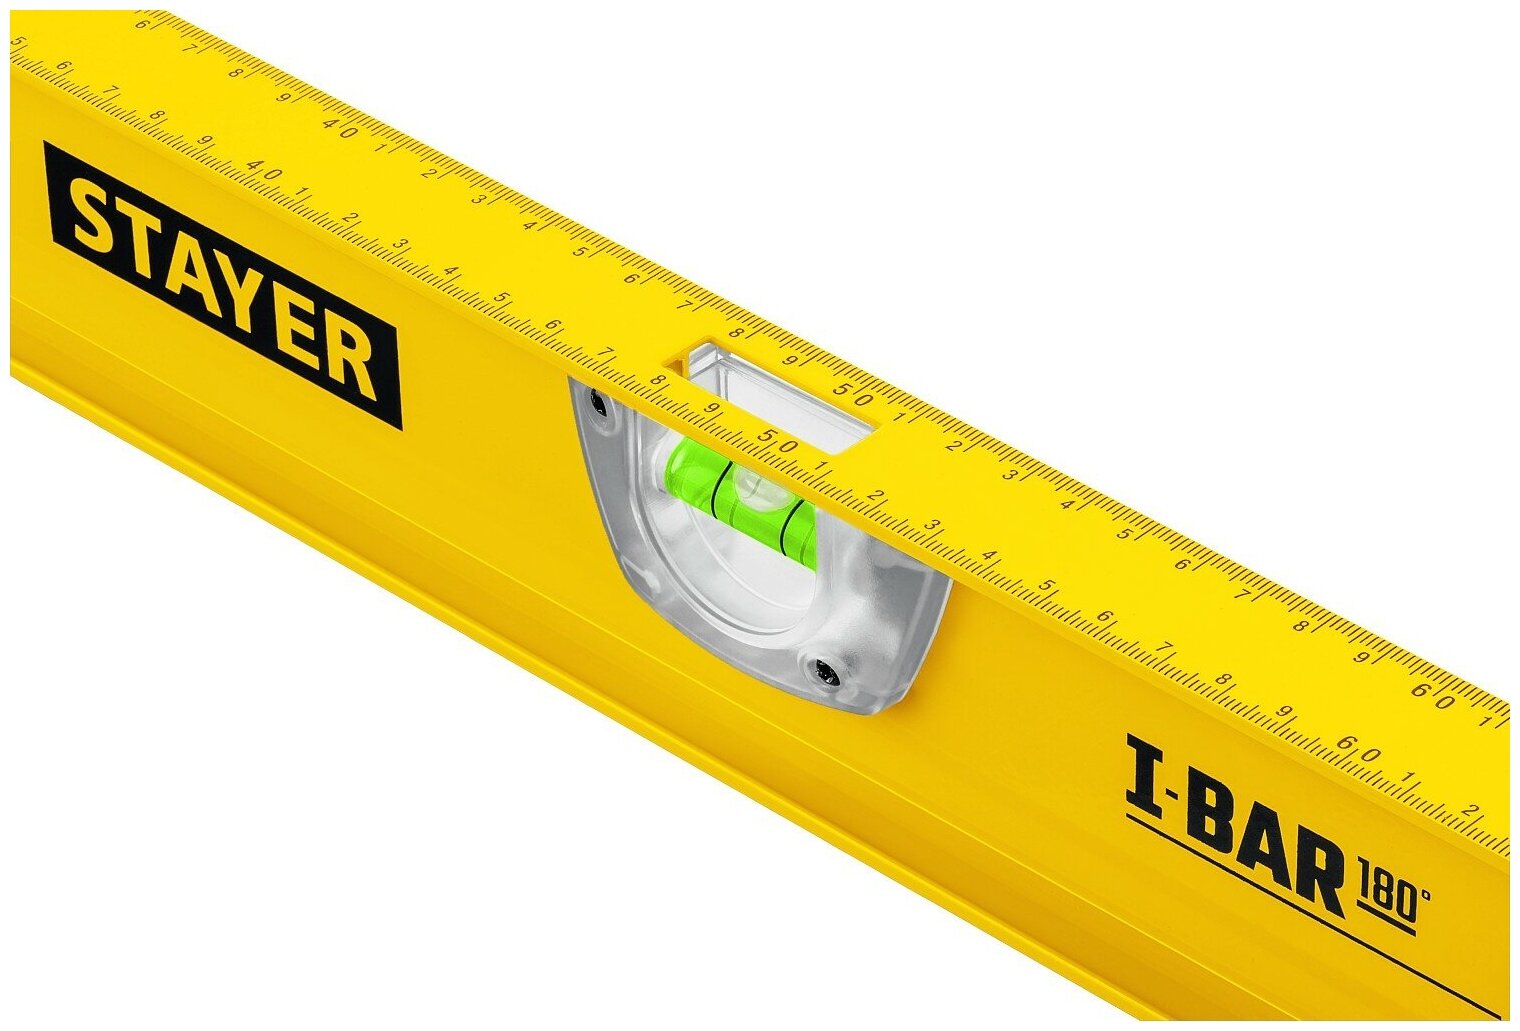 STAYER I-Bar 180˚ 800 мм двутавровый уровень с поворотным глазком (3470-080)